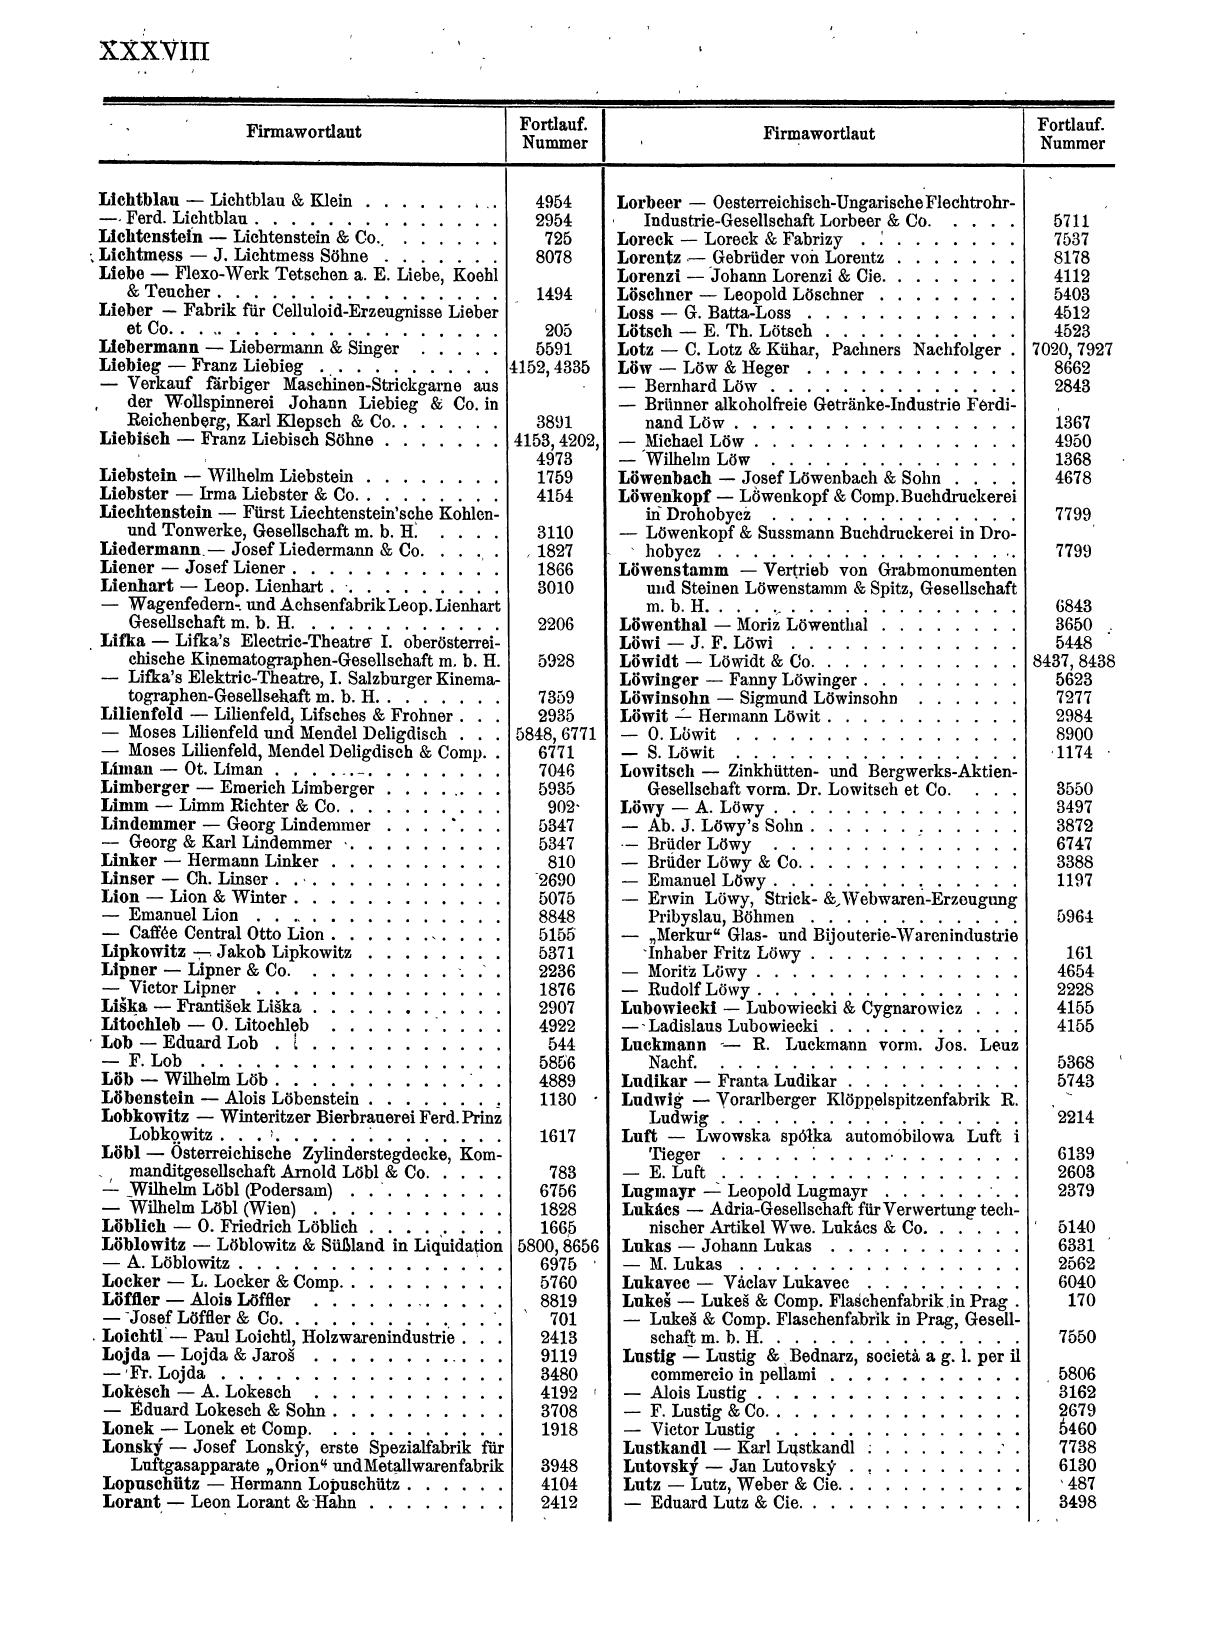 Zentralblatt für die Eintragungen in das Handelsregister 1913, Teil 1 - Seite 46